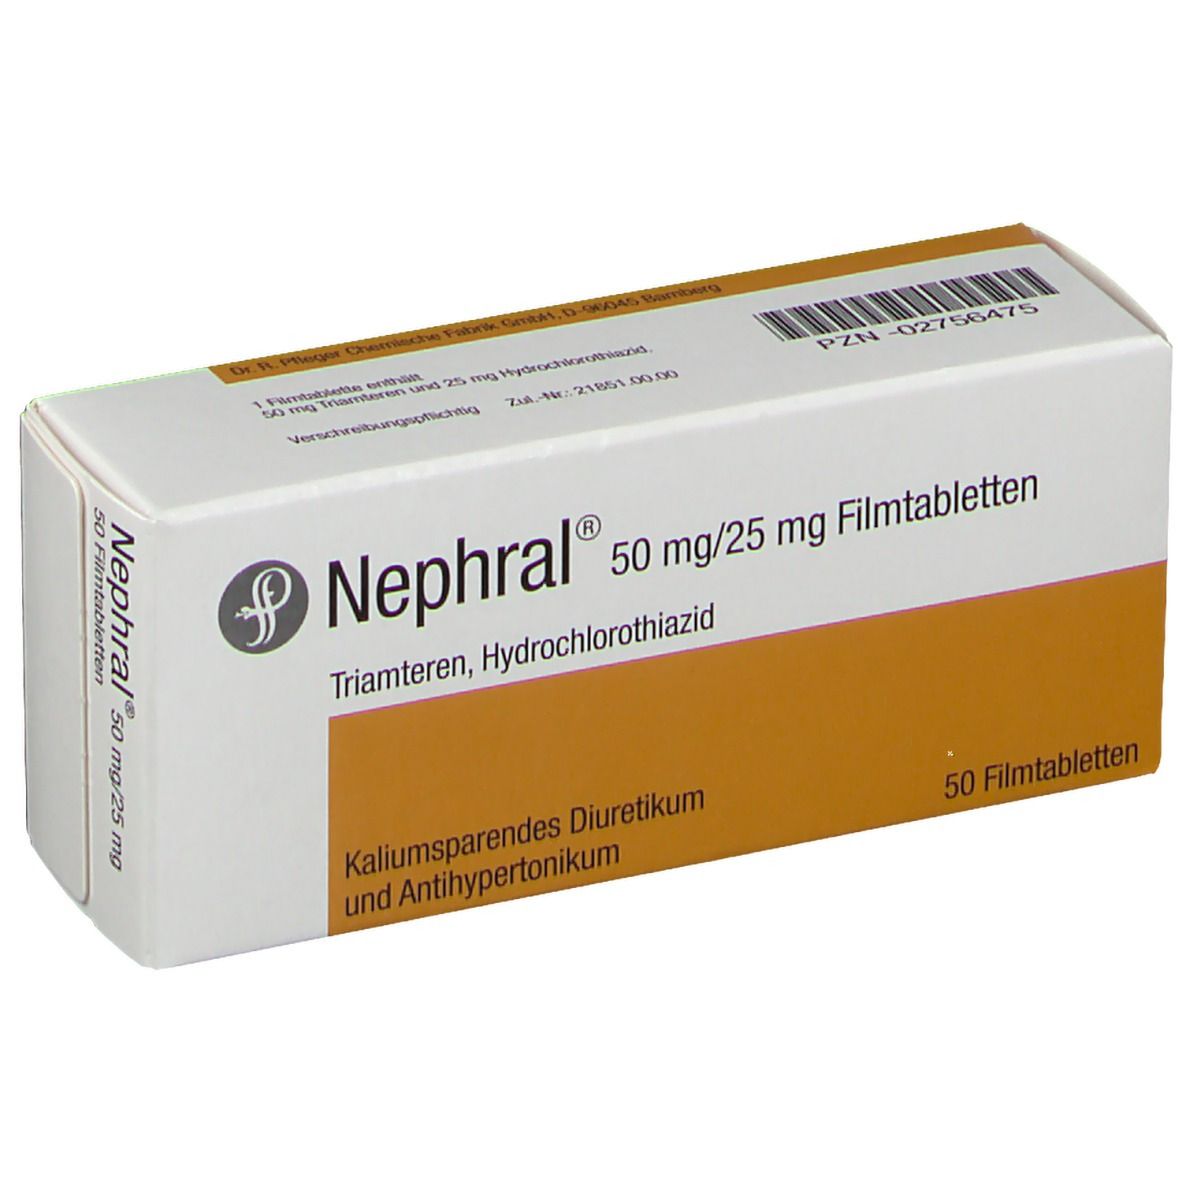 Nephral® 50 mg/25 mg